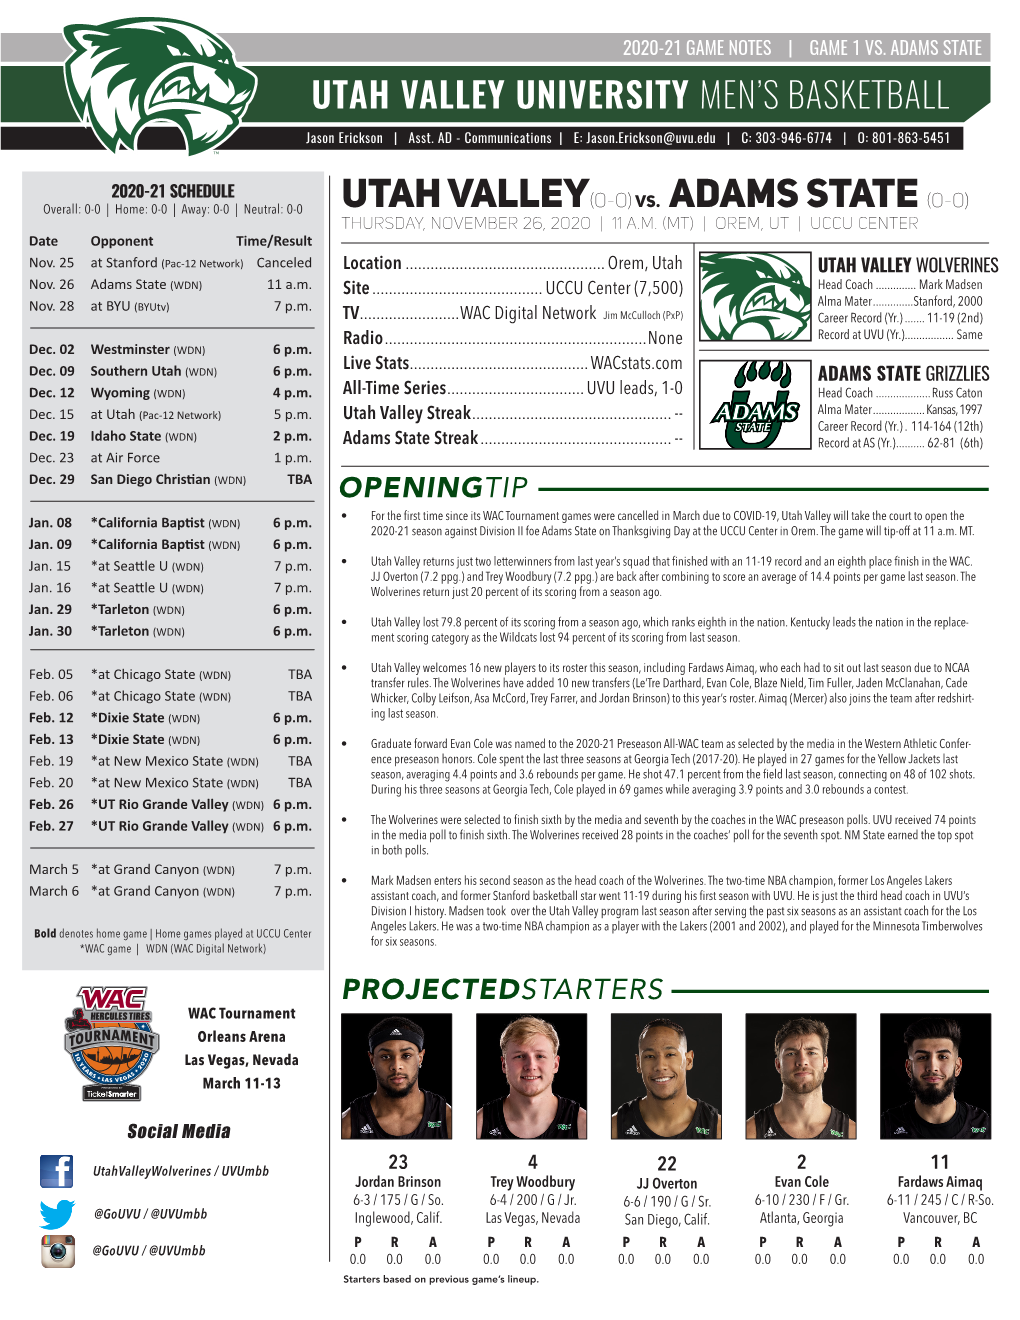 Utah Valley(0-0)Vs. Adams State